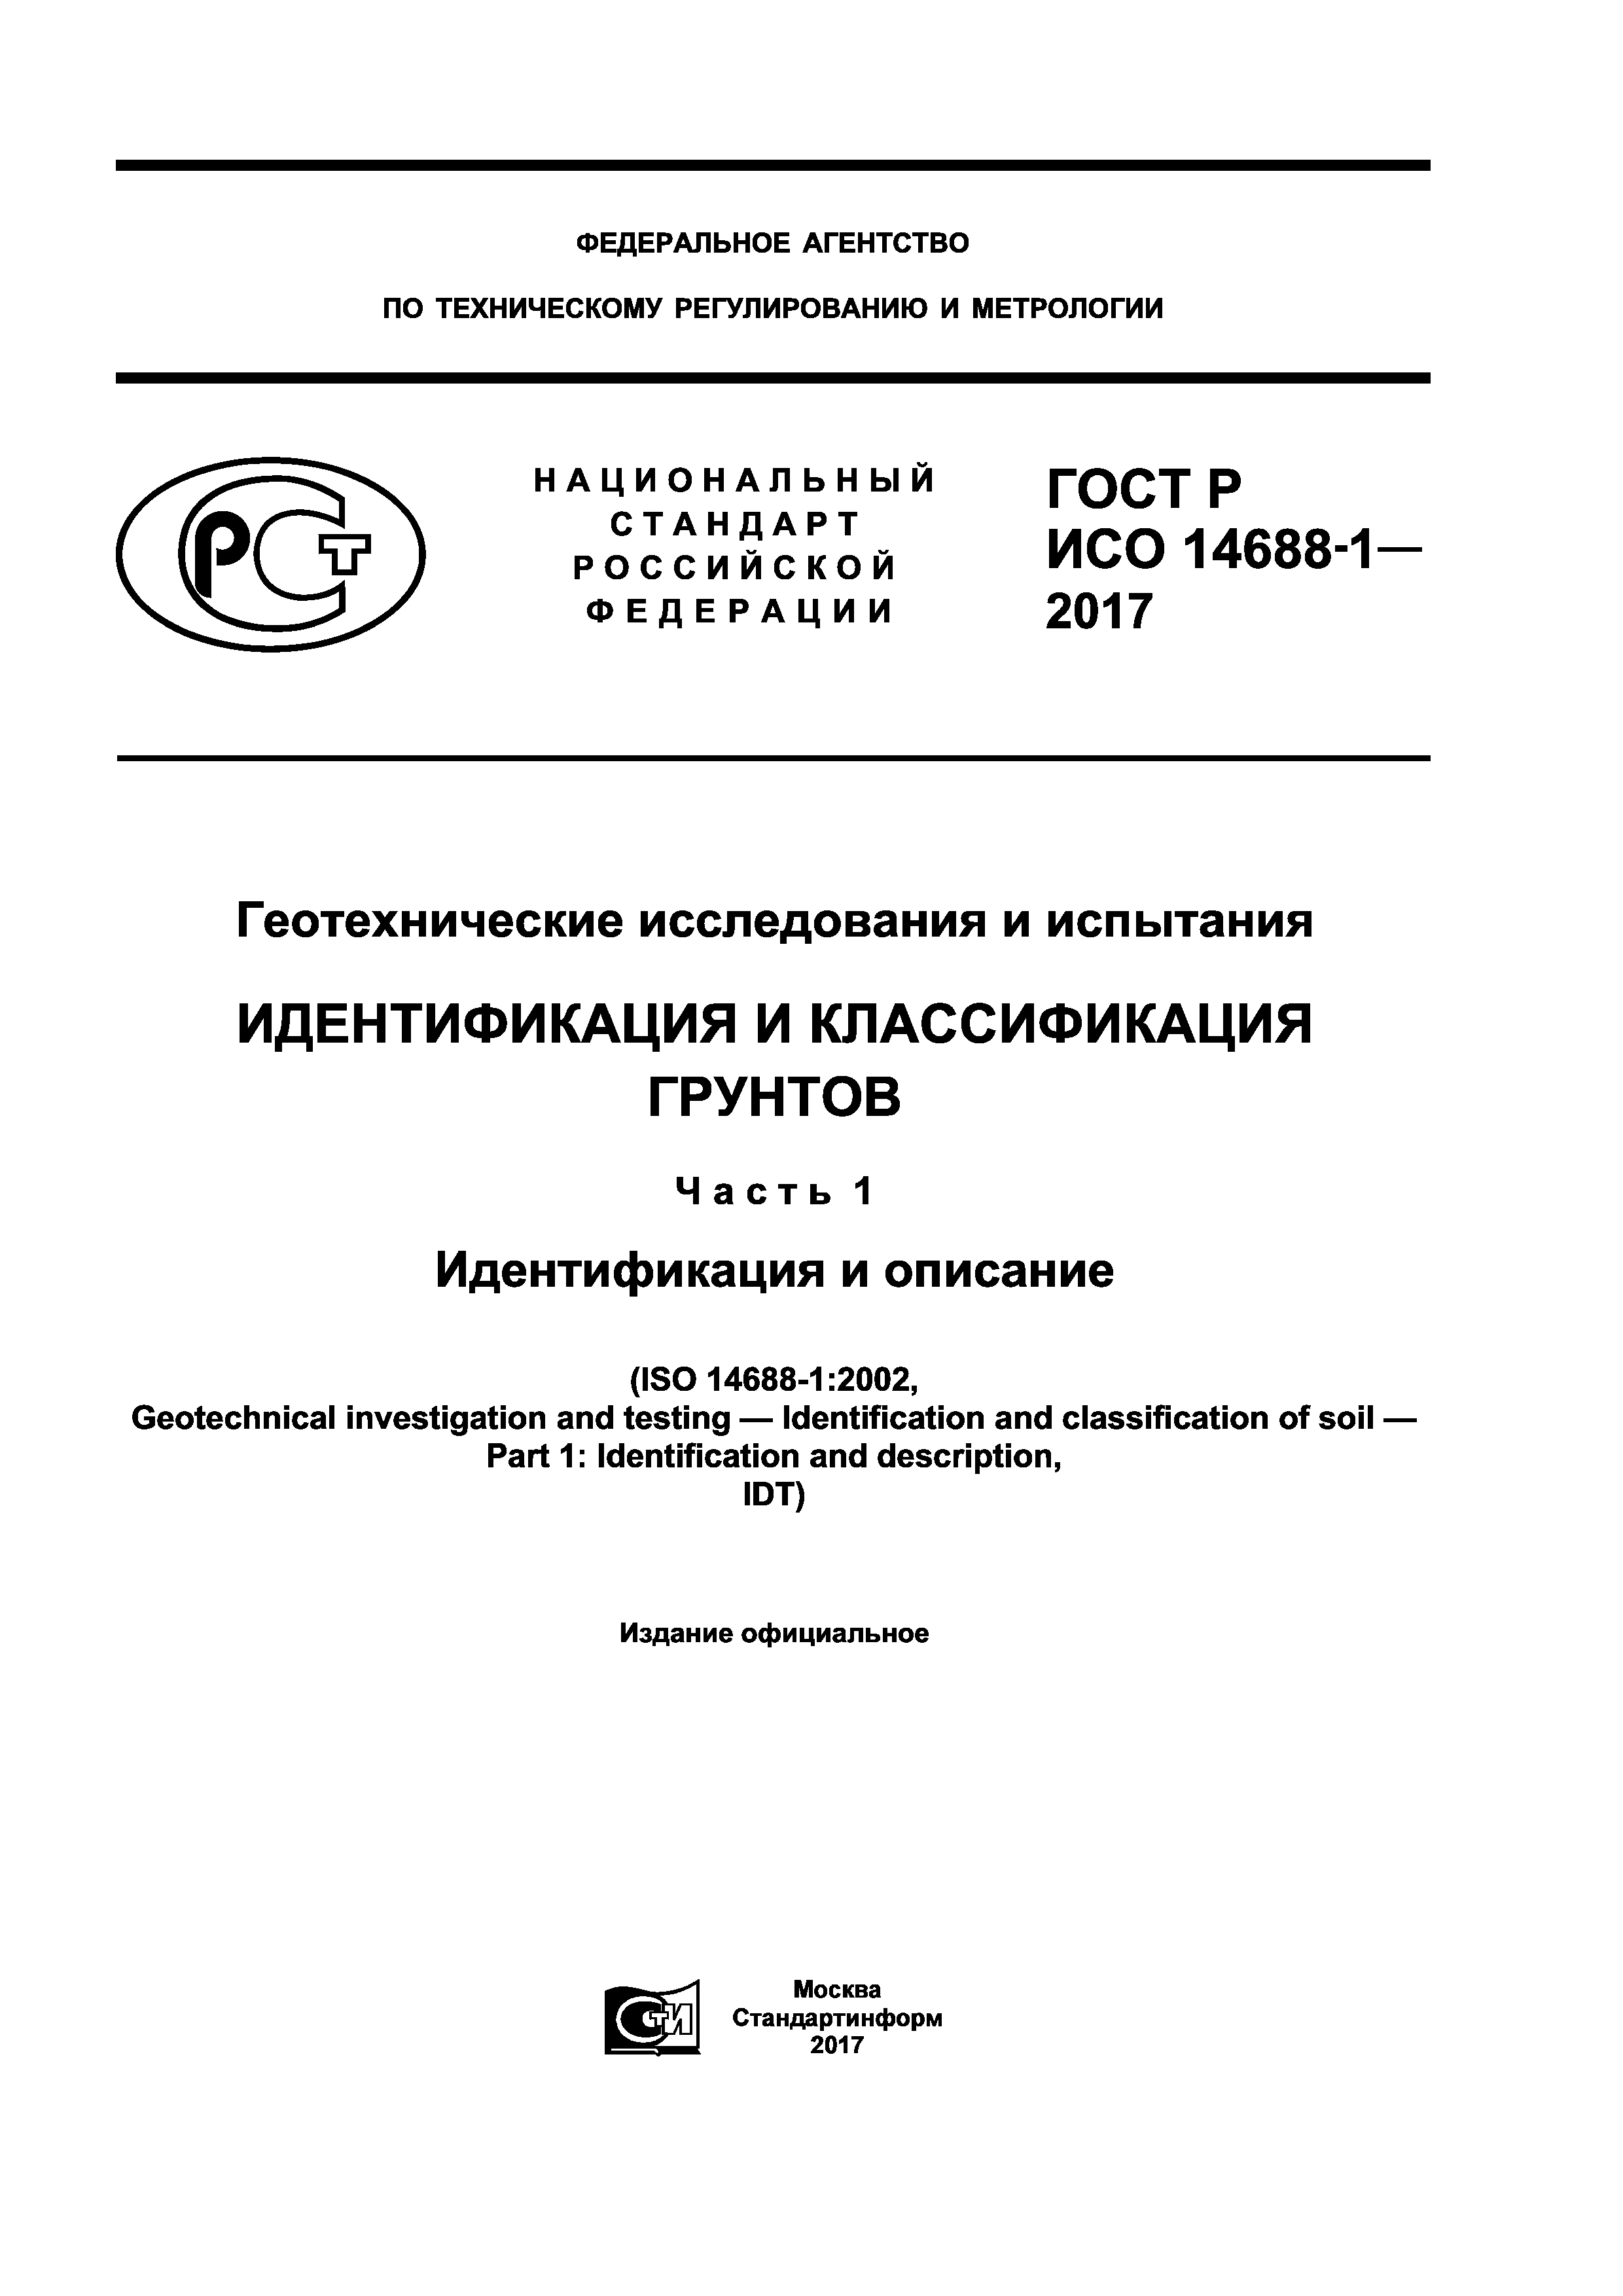 ГОСТ Р ИСО 14688-1-2017